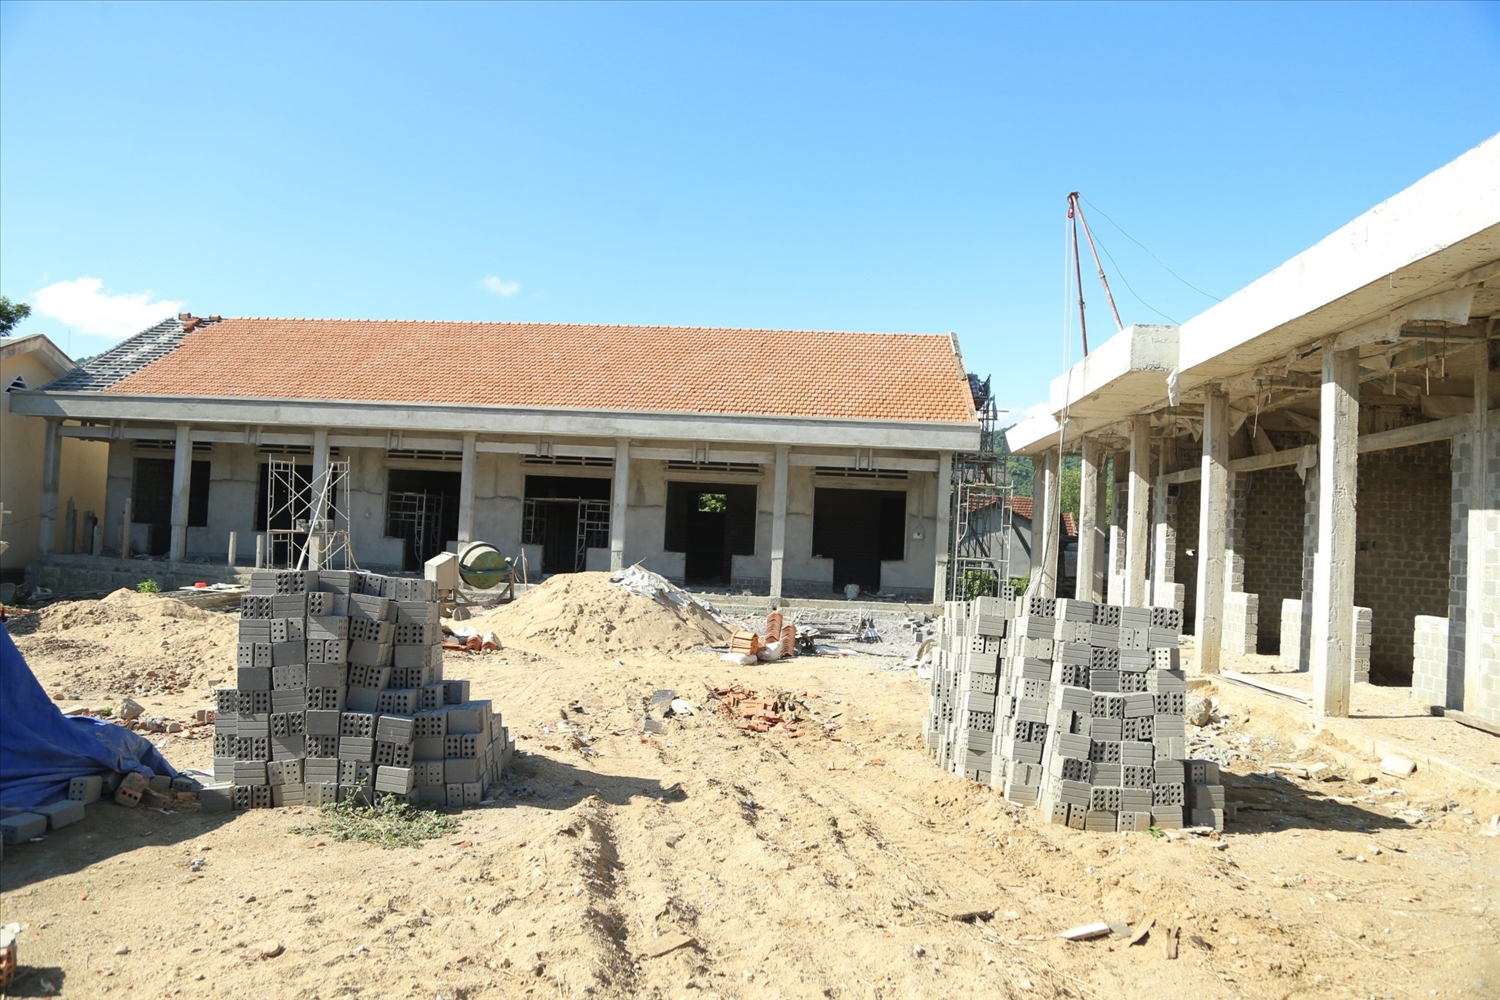 Dãy trường học 2 tầng đang được hoàn thiện của trường Phổ thông dân tộc bán trú Tây Sơn (Bình Định) được xây dựng bằng nguồn vốn kết hợp giữa các Chương trình mục tiêu quốc gia